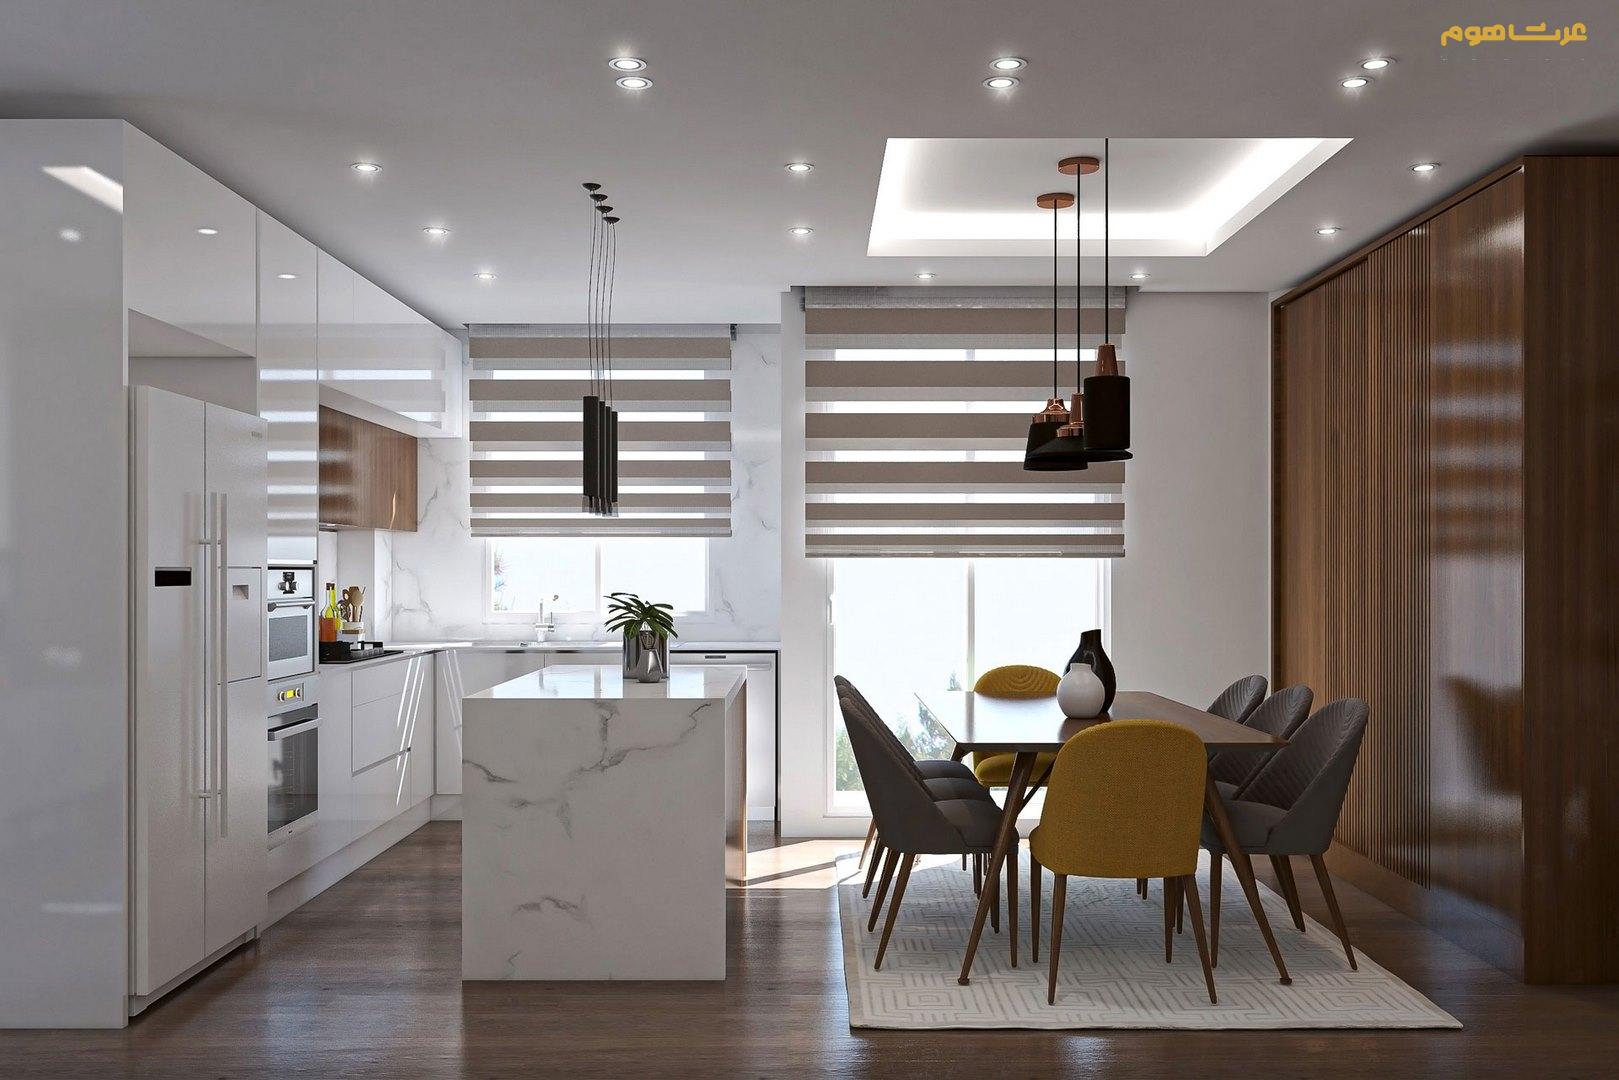 طراحی داخلی مدرن جنت آباد بهرامی نژاد آشپزخانه